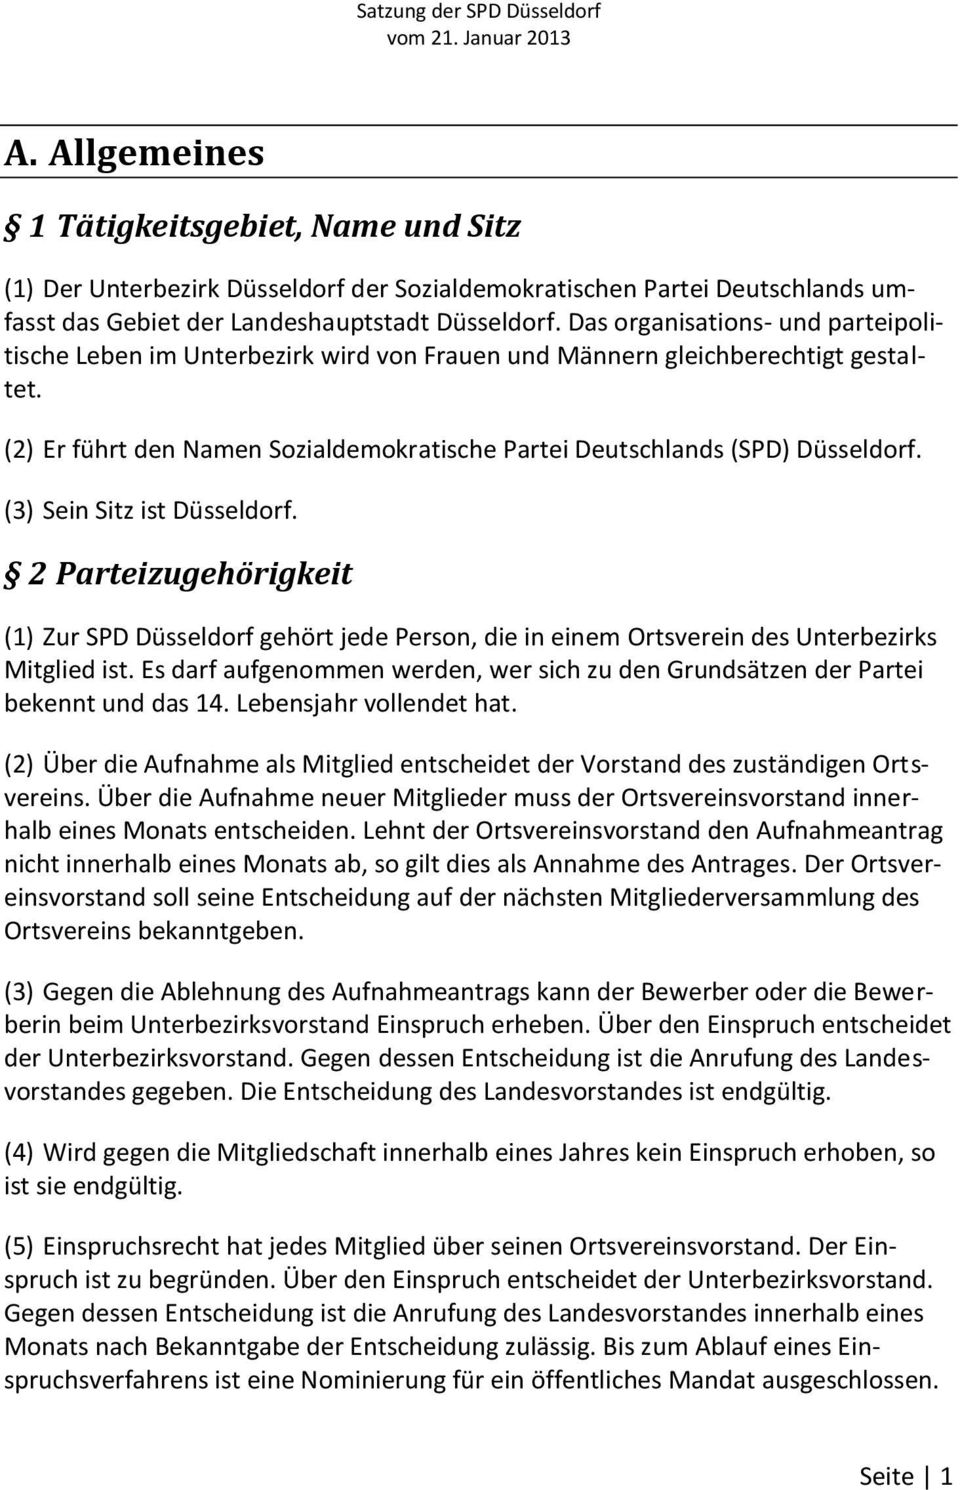 (3) Sein Sitz ist Düsseldorf. 2 Parteizugehörigkeit (1) Zur SPD Düsseldorf gehört jede Person, die in einem Ortsverein des Unterbezirks Mitglied ist.